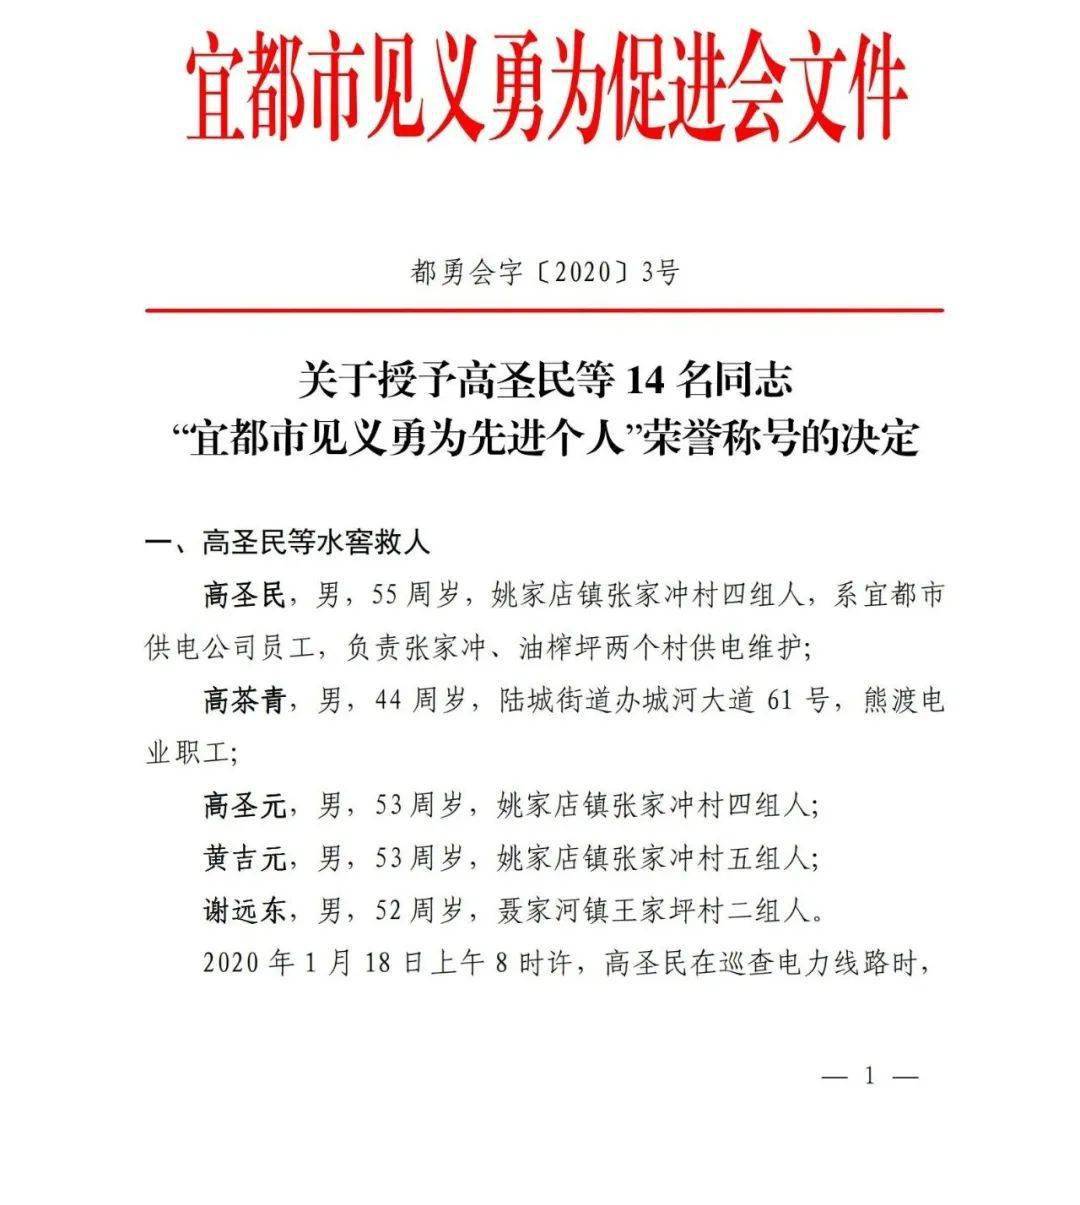 表彰通报关于表彰李东明彭平同志见义勇为行为的通报